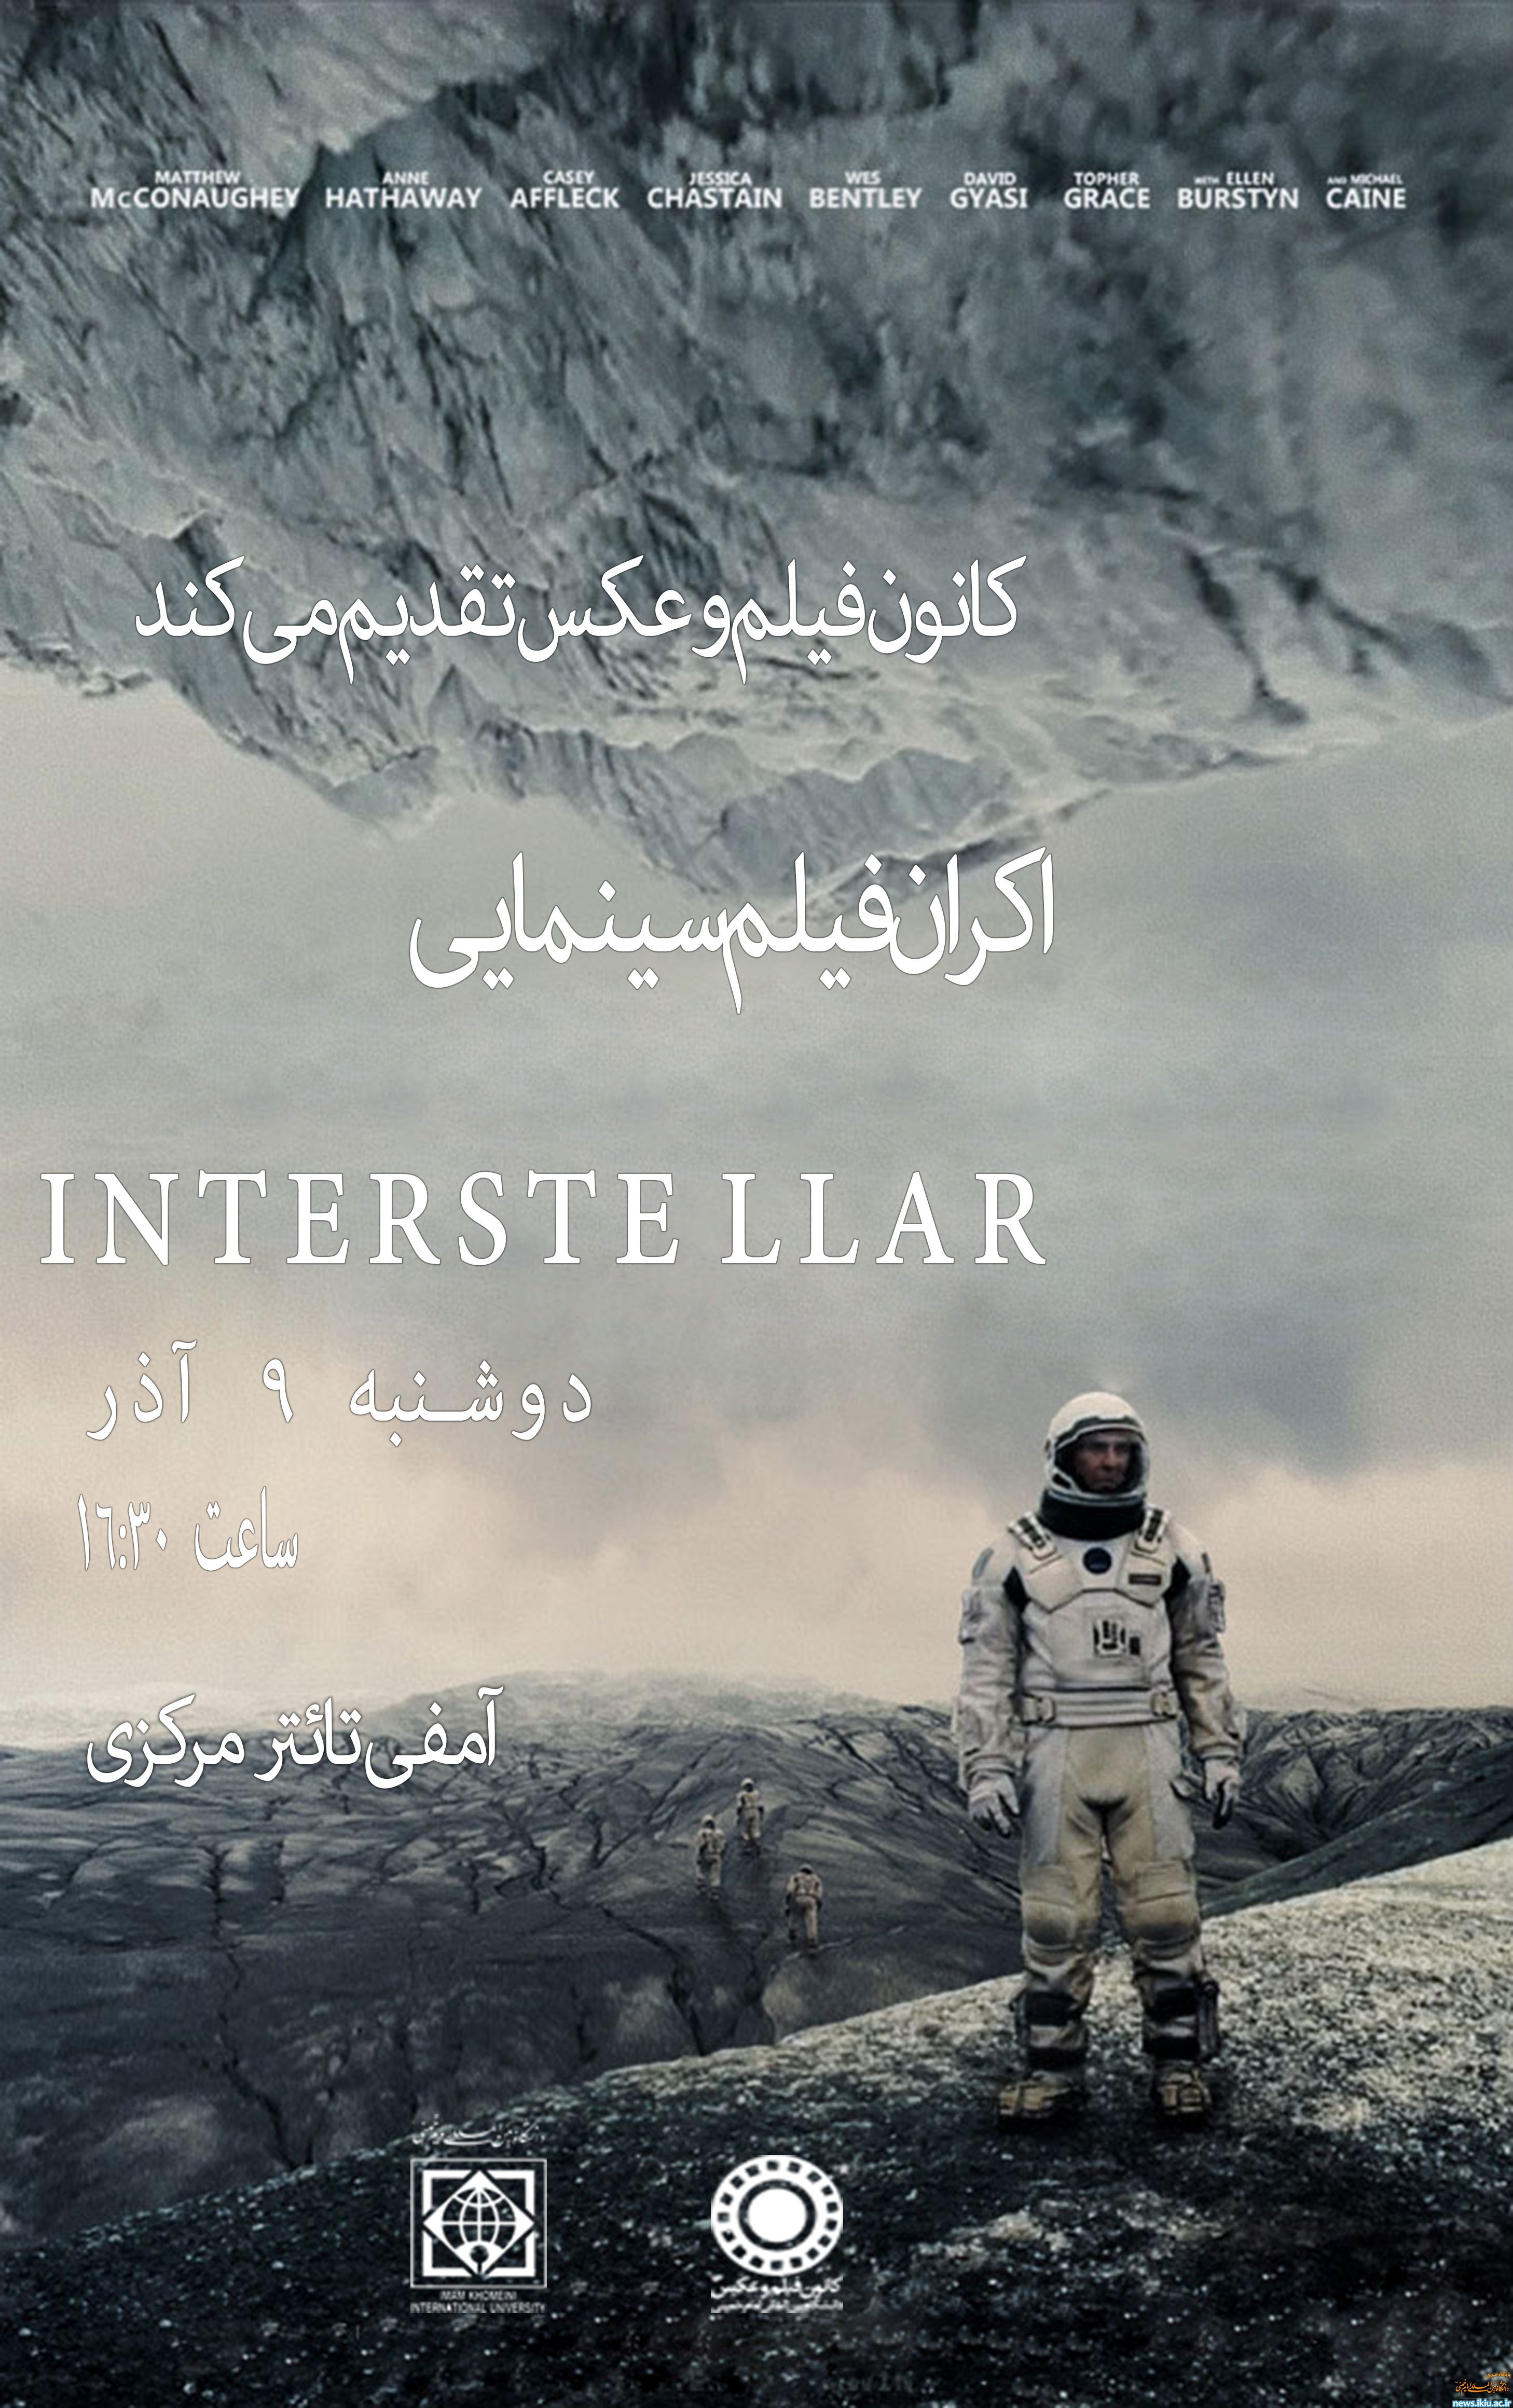 اکران فیلم سینمایی INTERSTELLAR